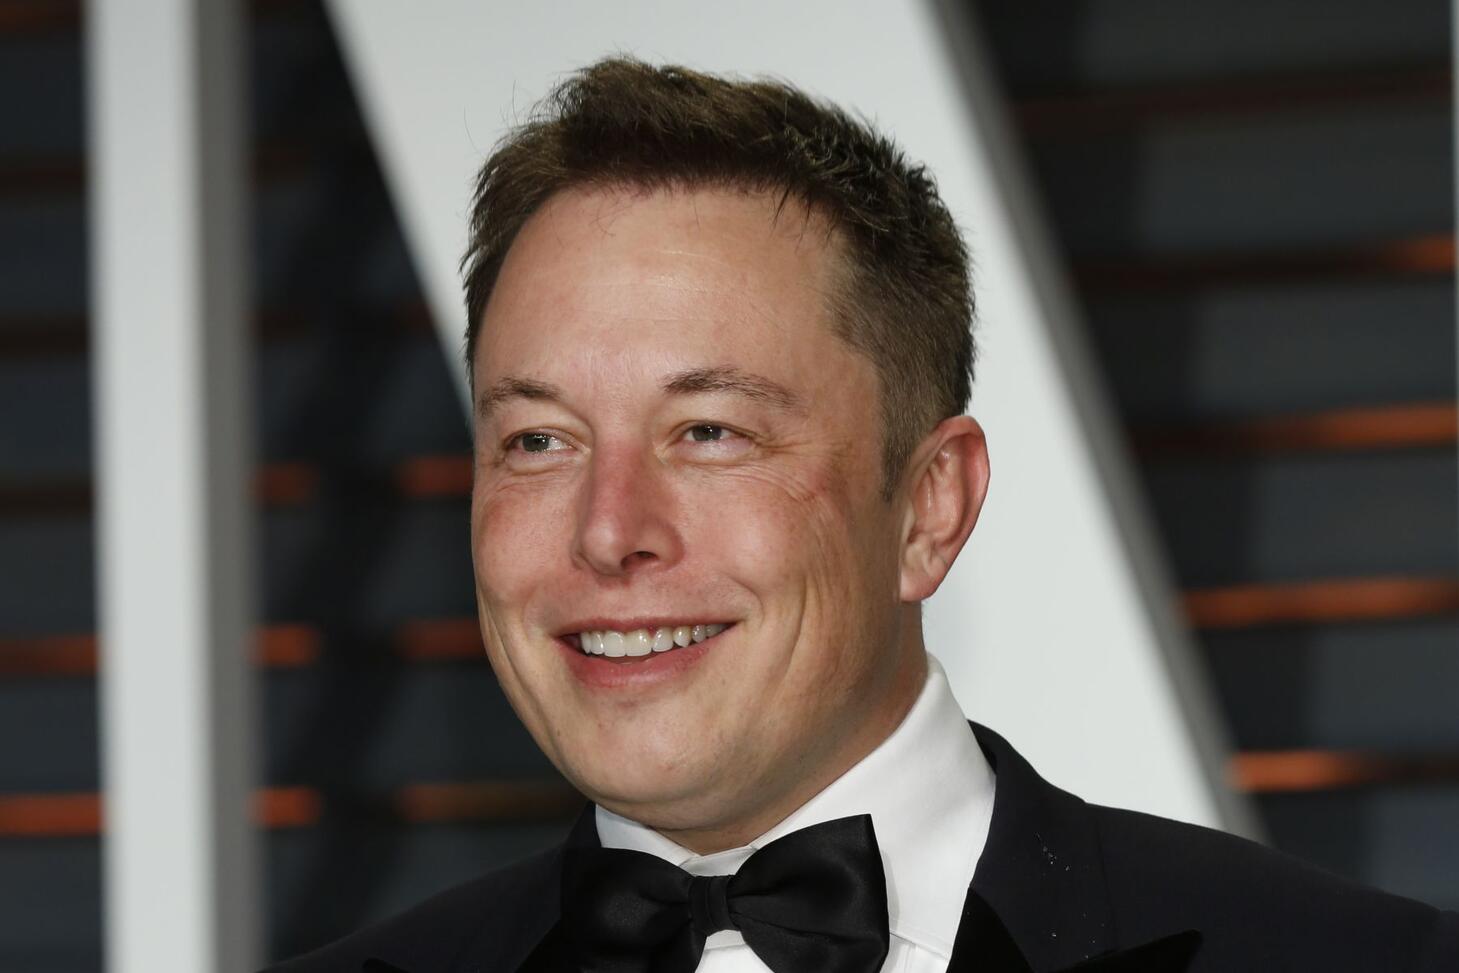 Elon Musk in a tuxedo, grinning